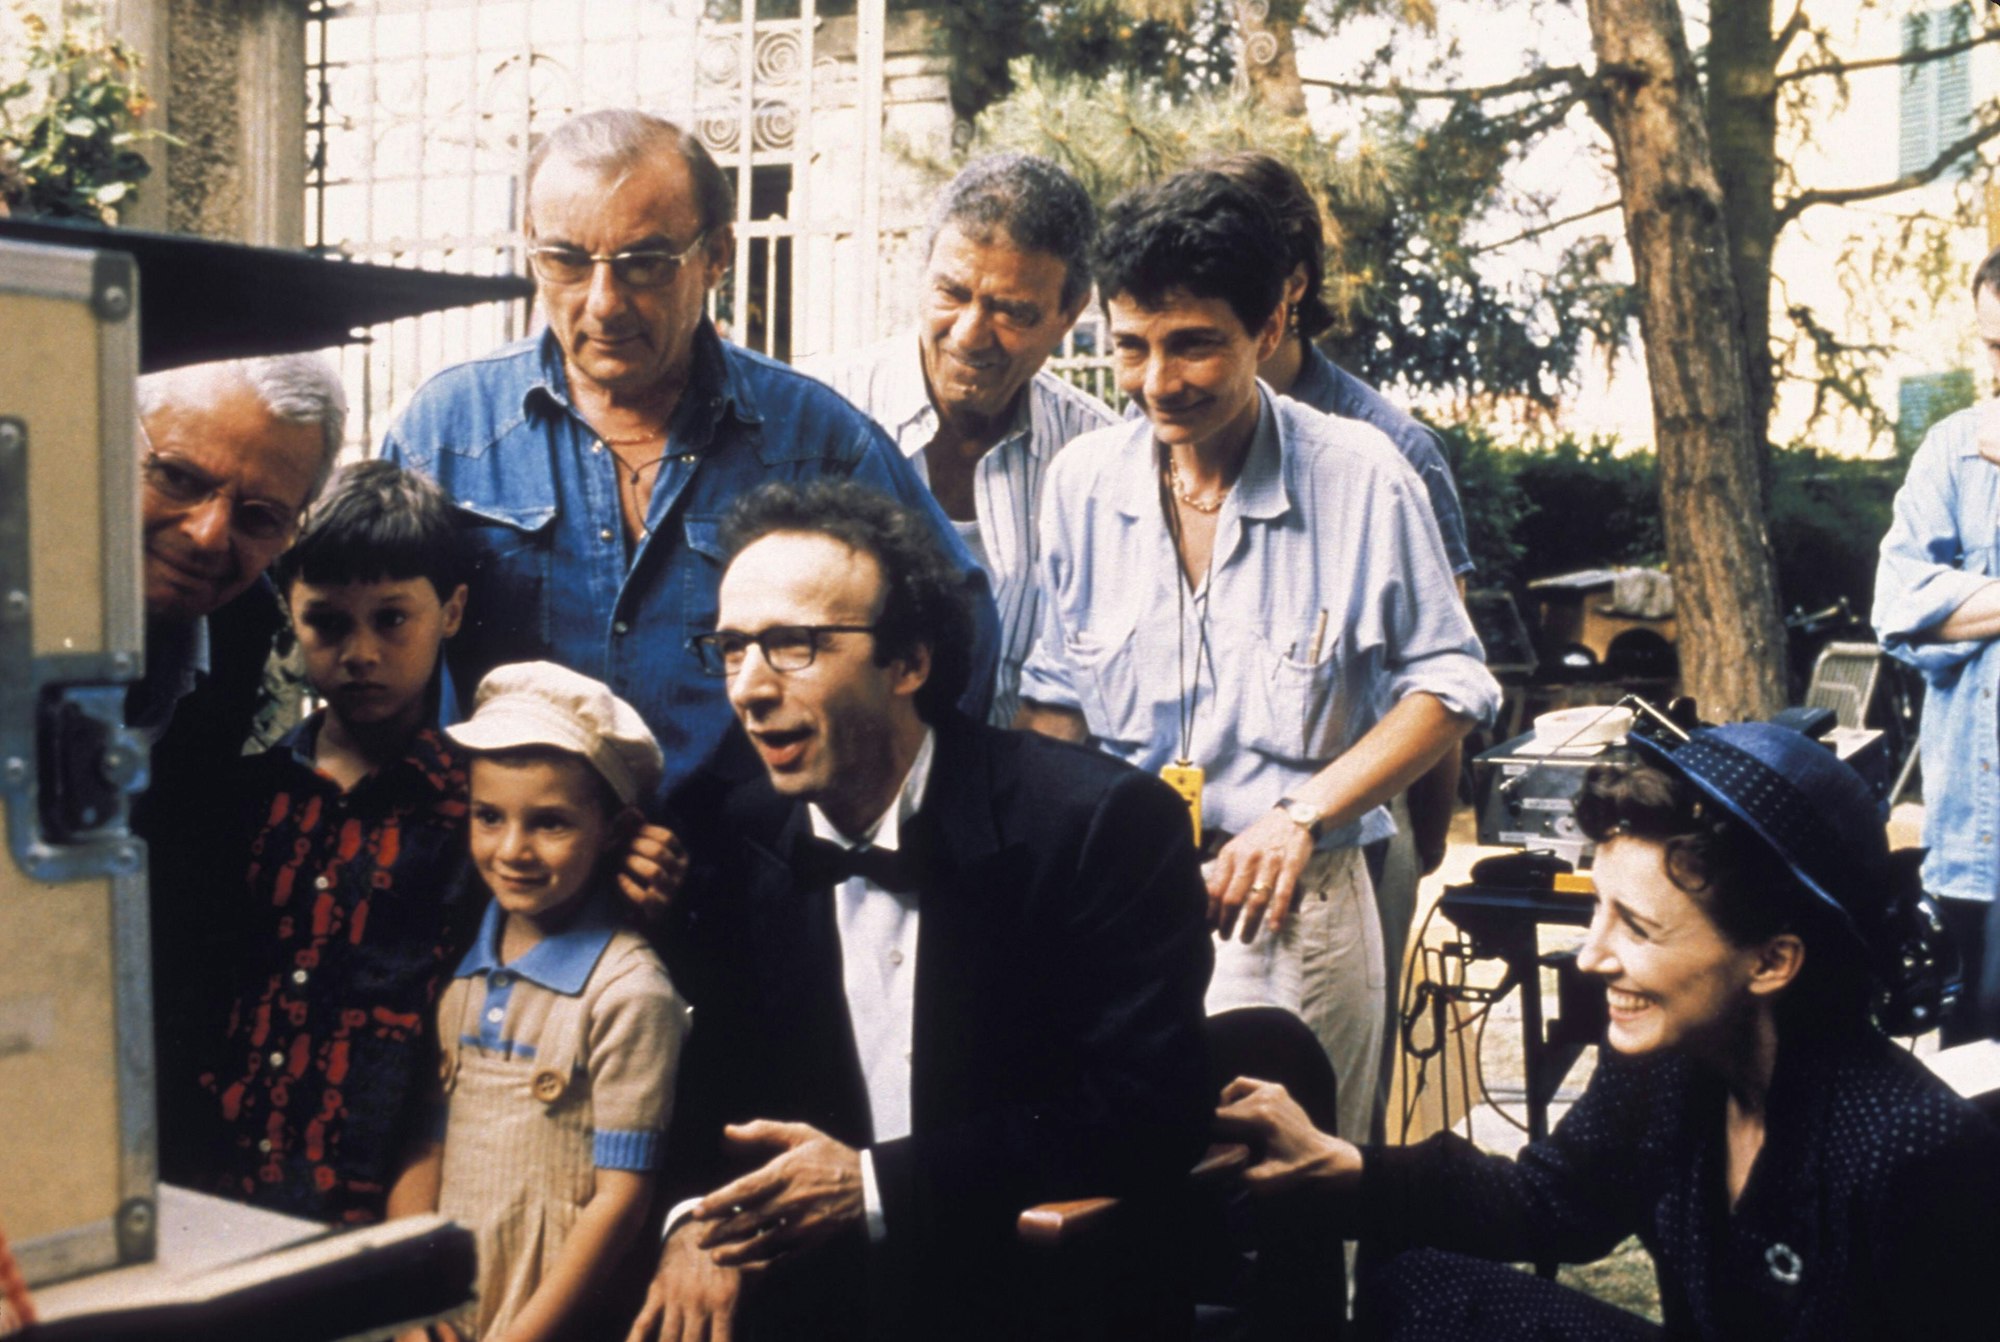 Giorgio Cantarini, Roberto Benigni und Nicoletta Braschi hinter den Kulissen vom Film "Das Leben ist schön". Das Bild entstand während der Dreharbeiten im Jahr 1997